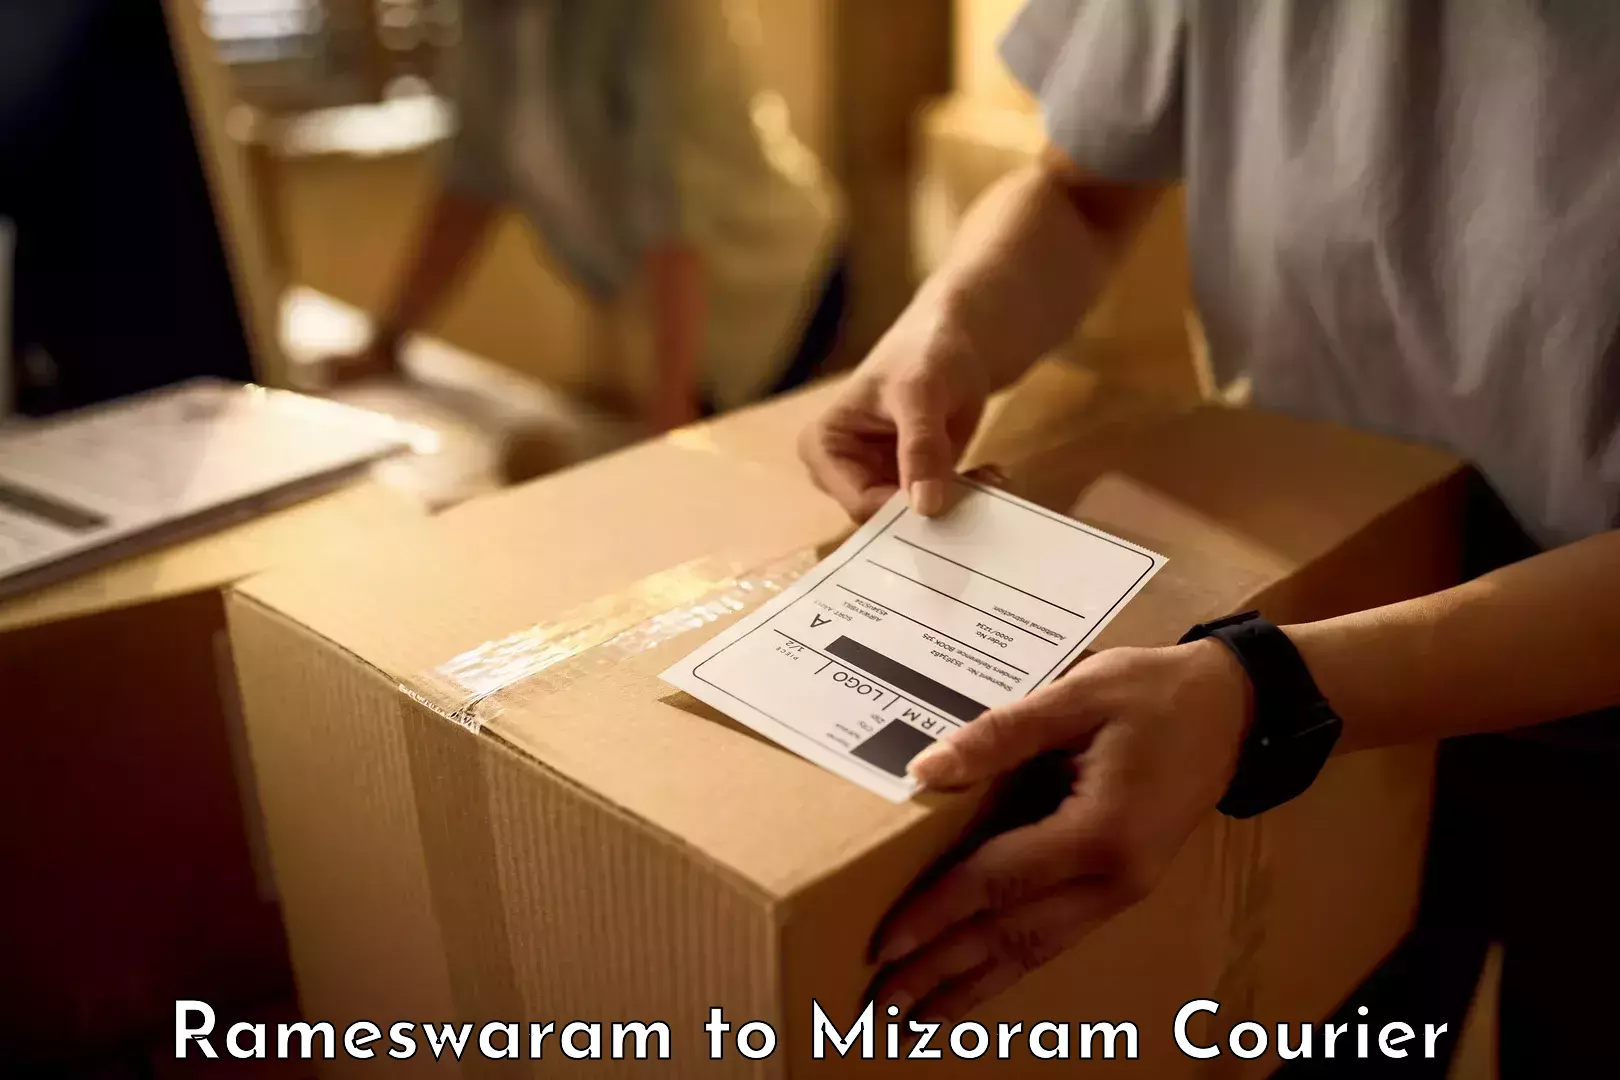 Luggage transit service Rameswaram to Mizoram